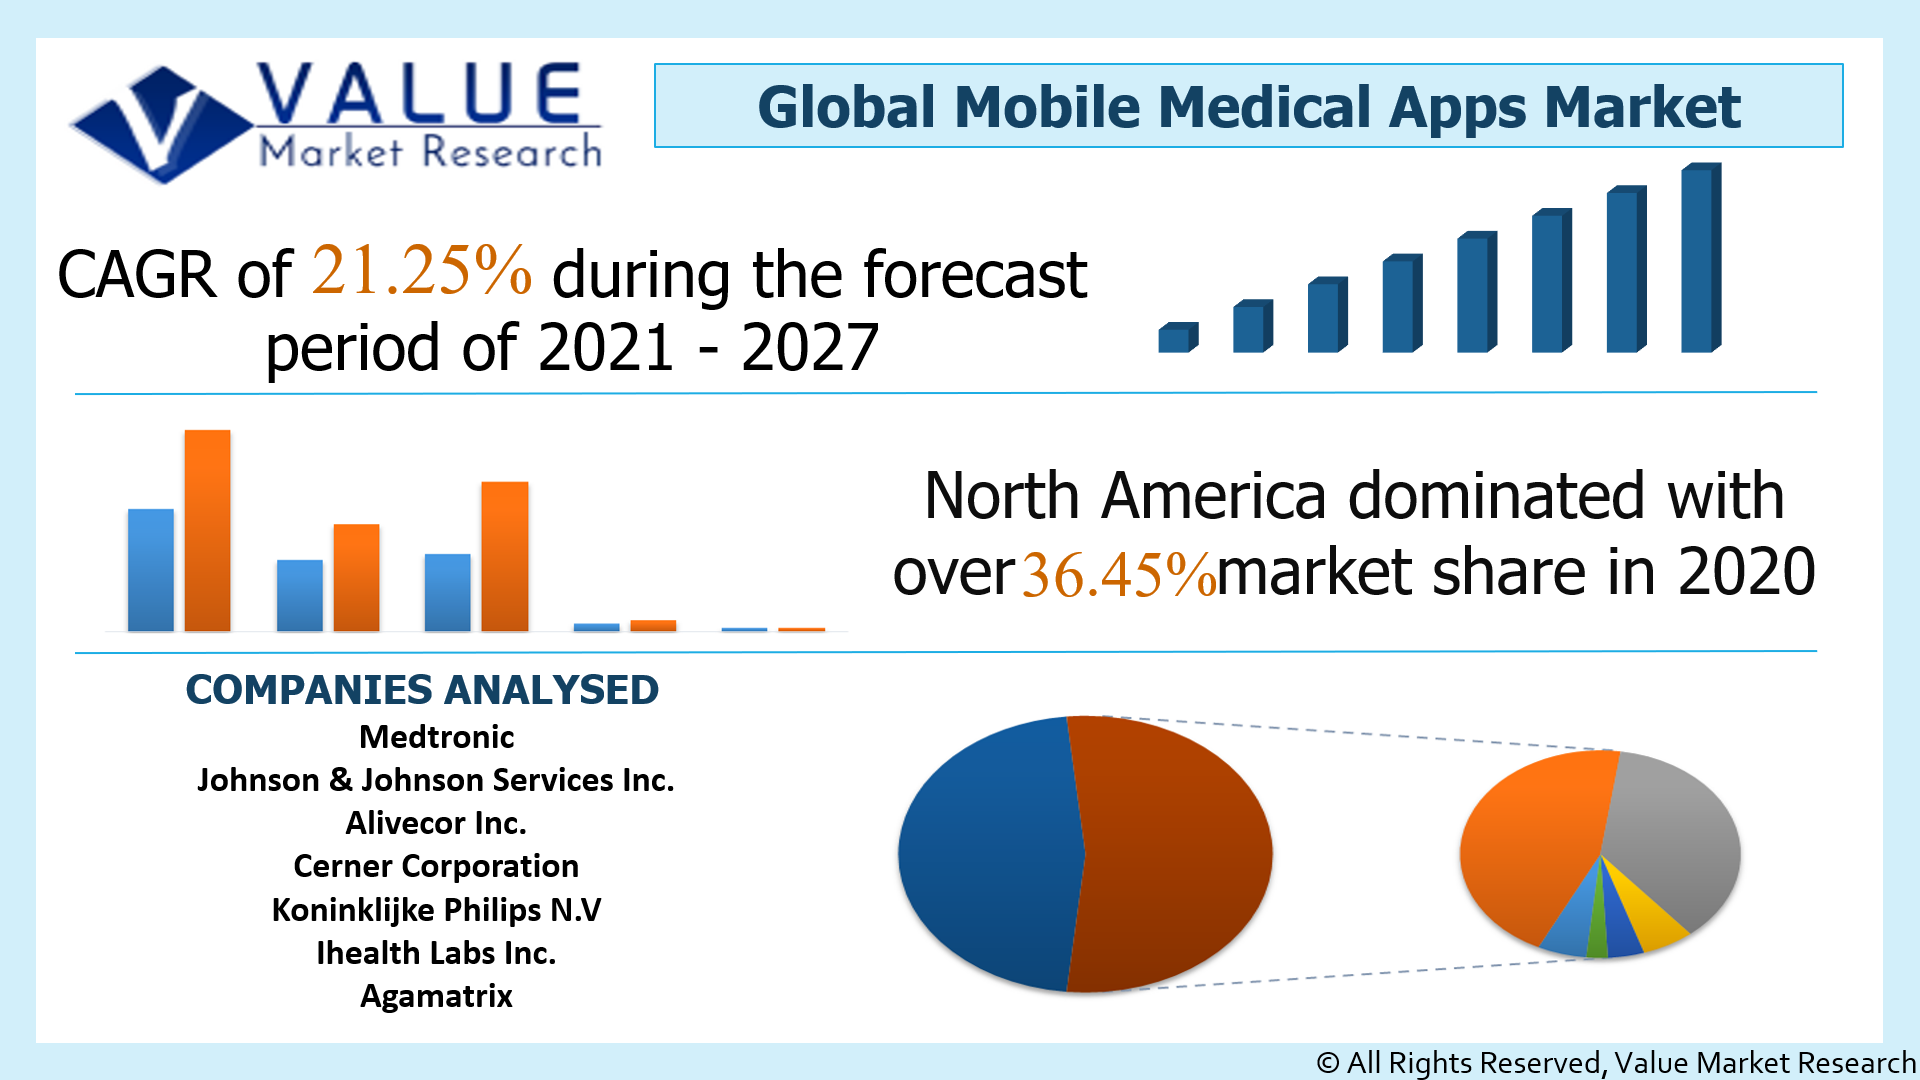 Global Mobile Medical Apps Market Share